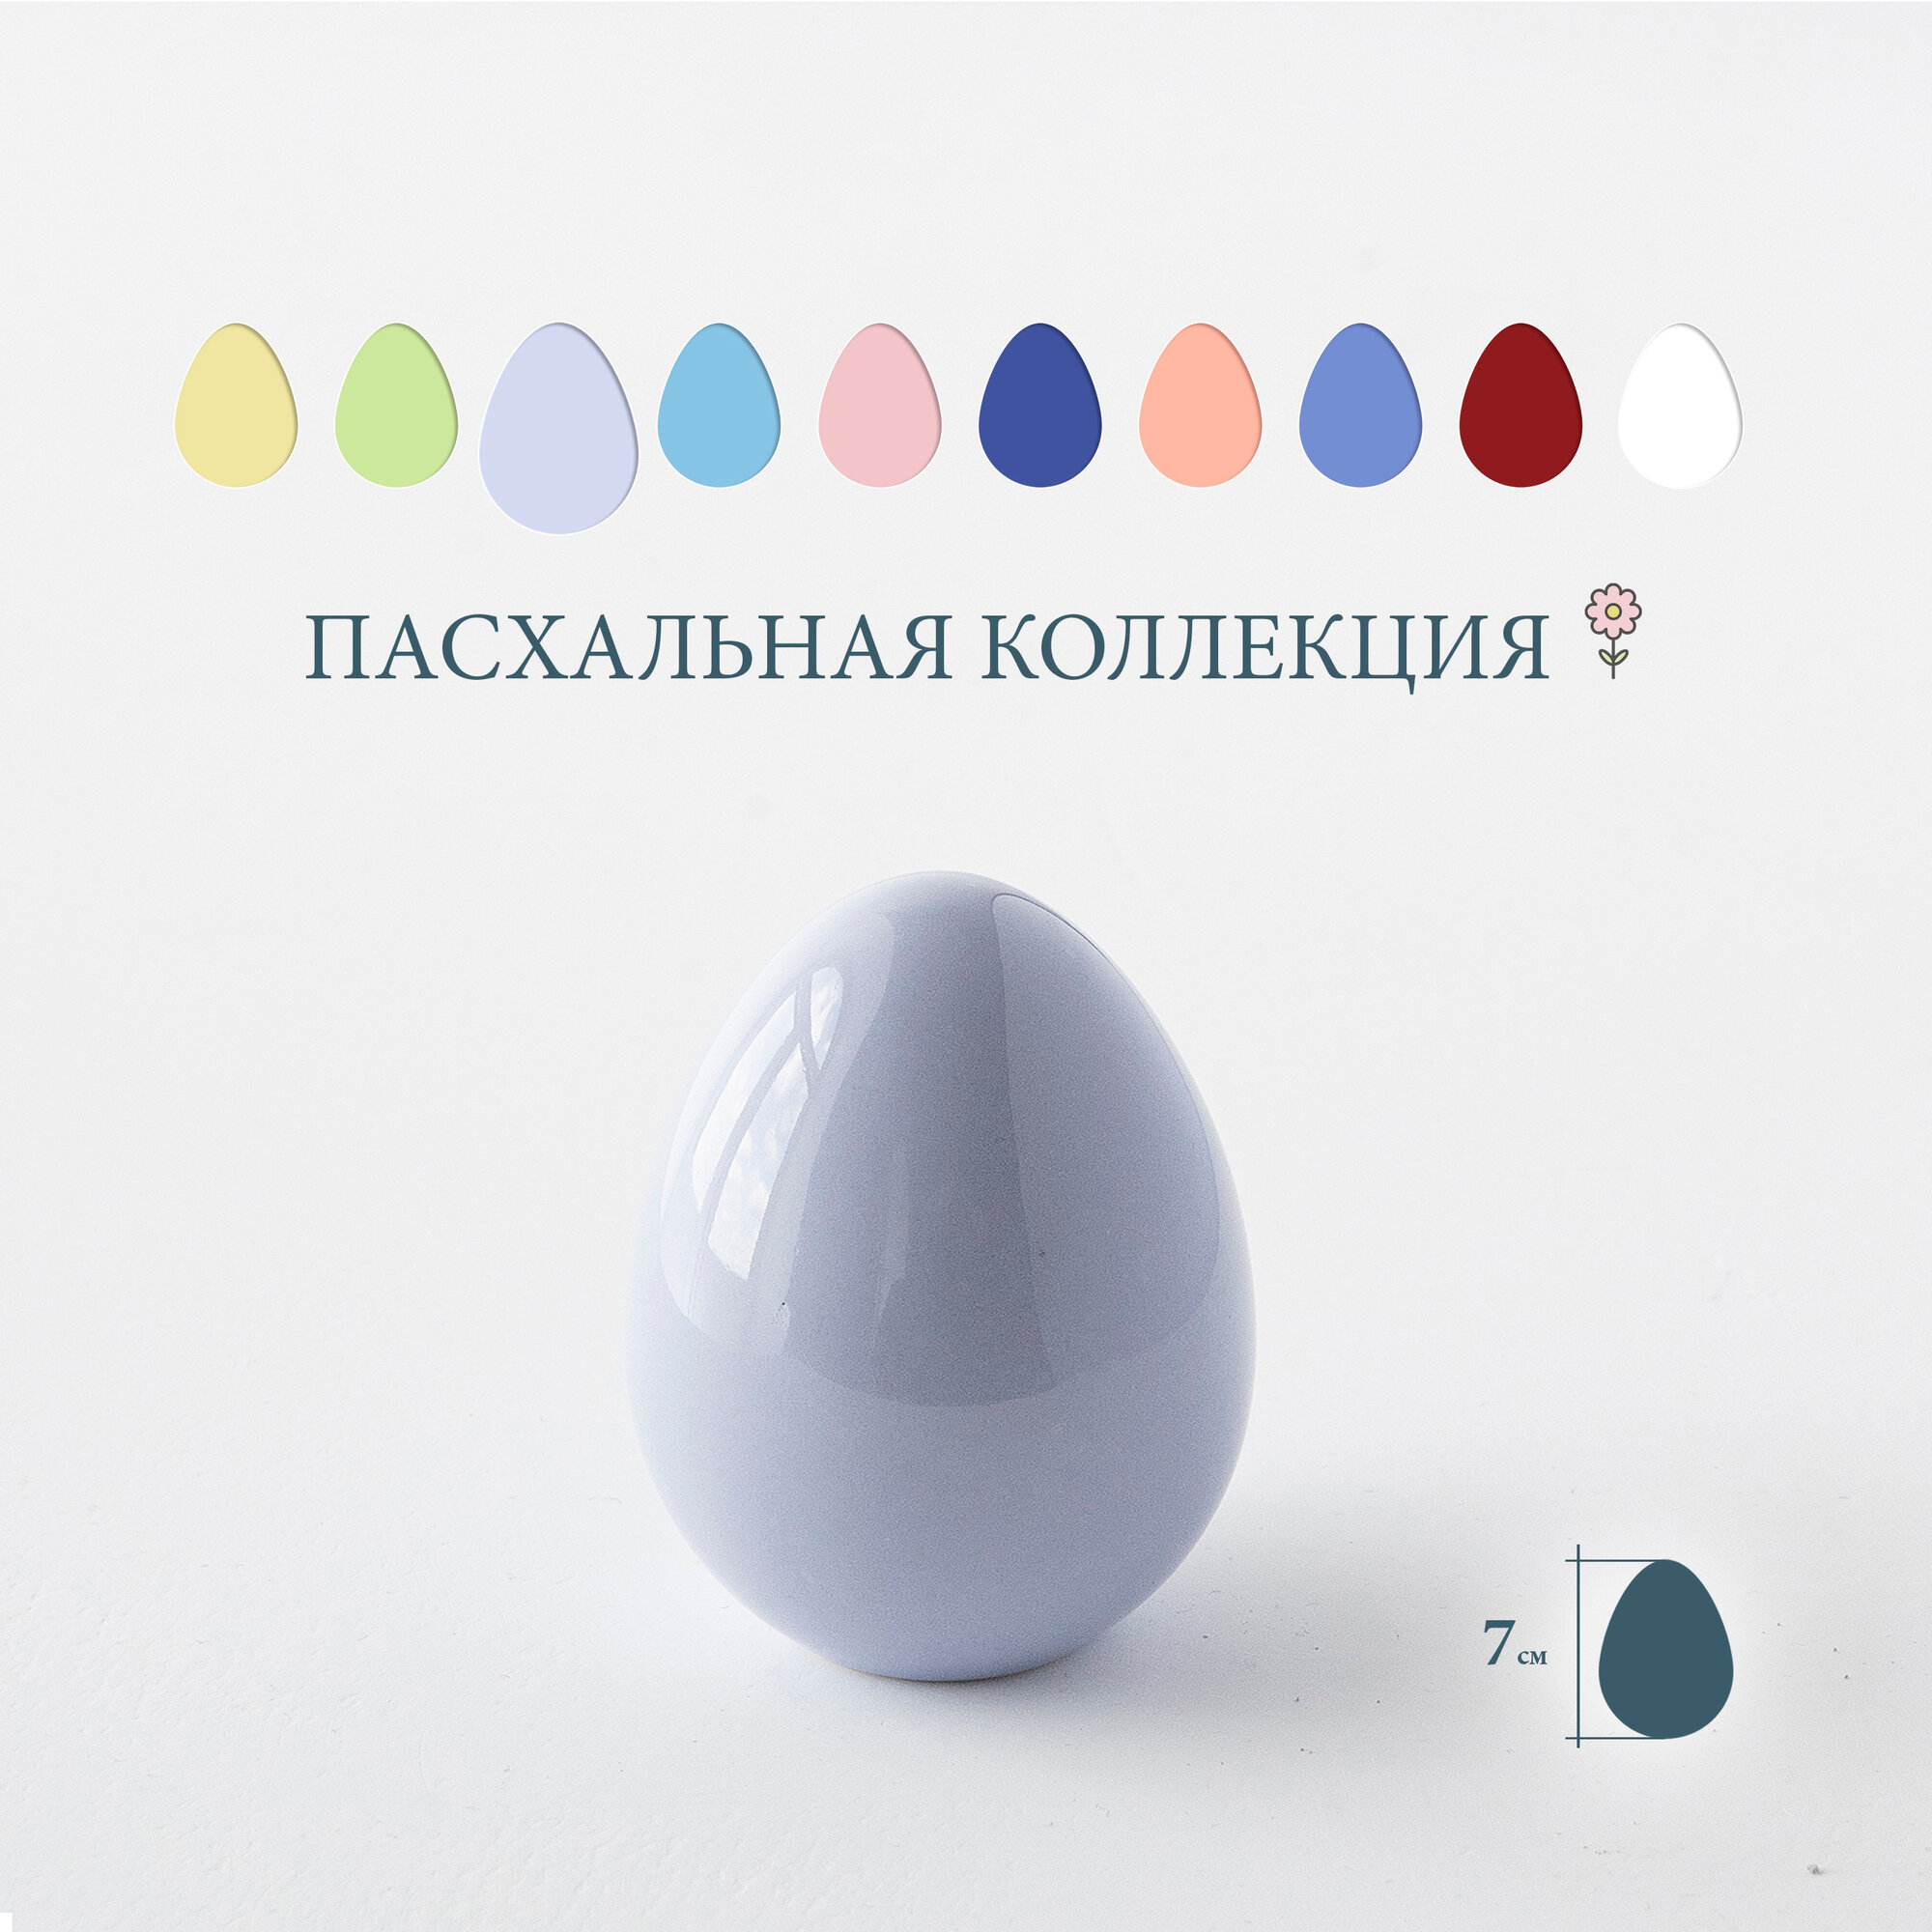 Яйцо Пасхальное, статуэтка "Egg Small", сиреневый, высота 7 см